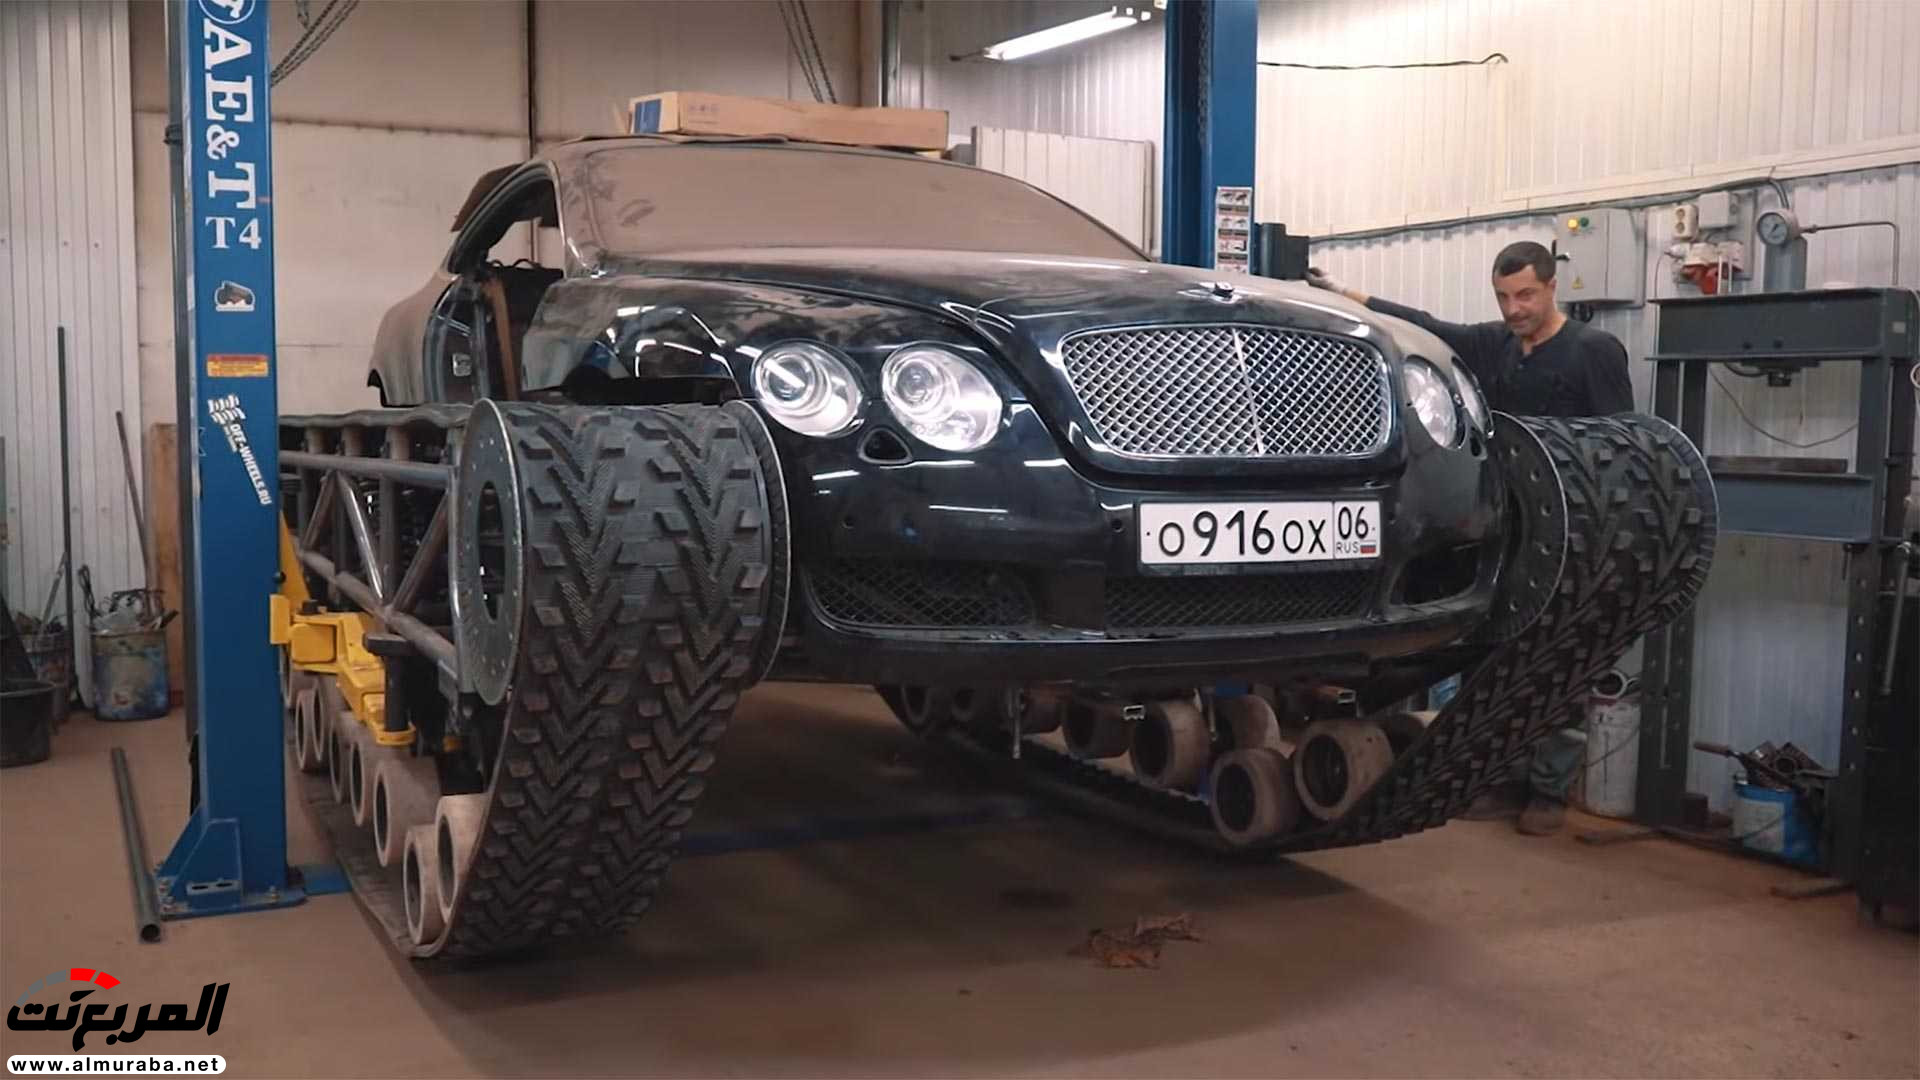 "بالفيديو" بنتلي كونتيننتال GT تتحول إلى أفخم دبابة في العالم! 5